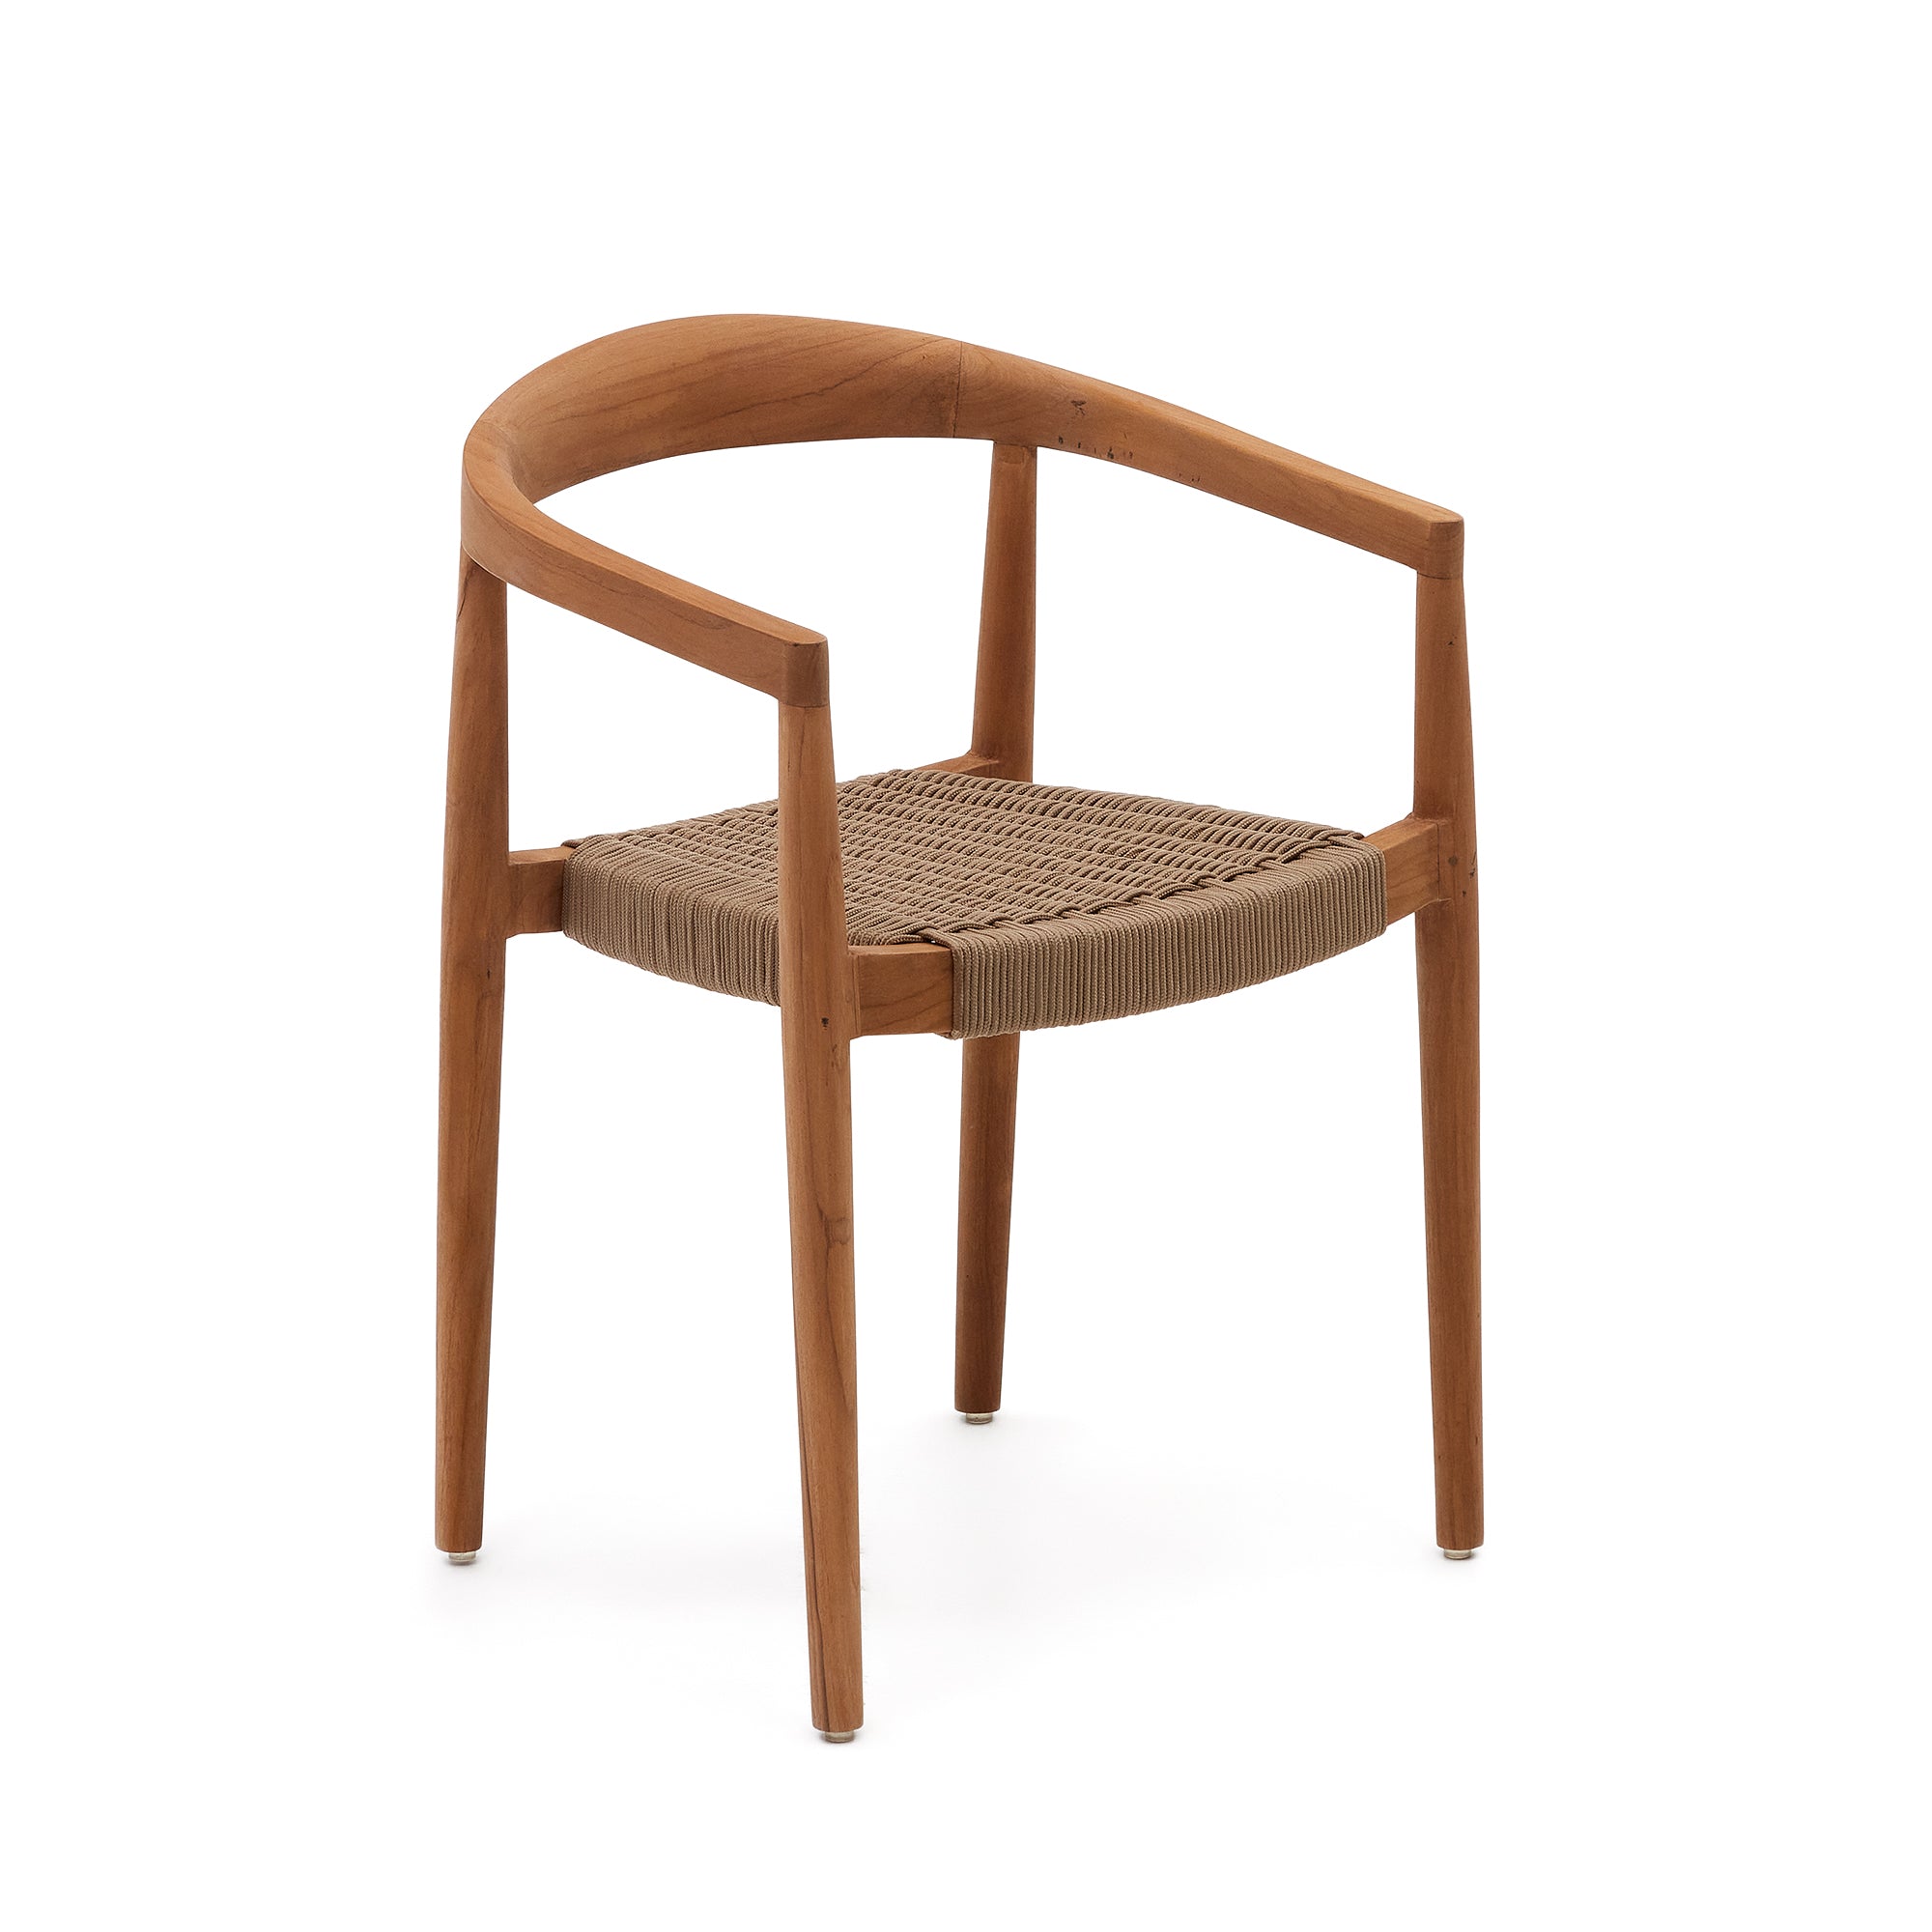 Ydalia egymásba rakható kültéri szék tömör teakfából, természetes kivitelben, bézs színű kötéllel.